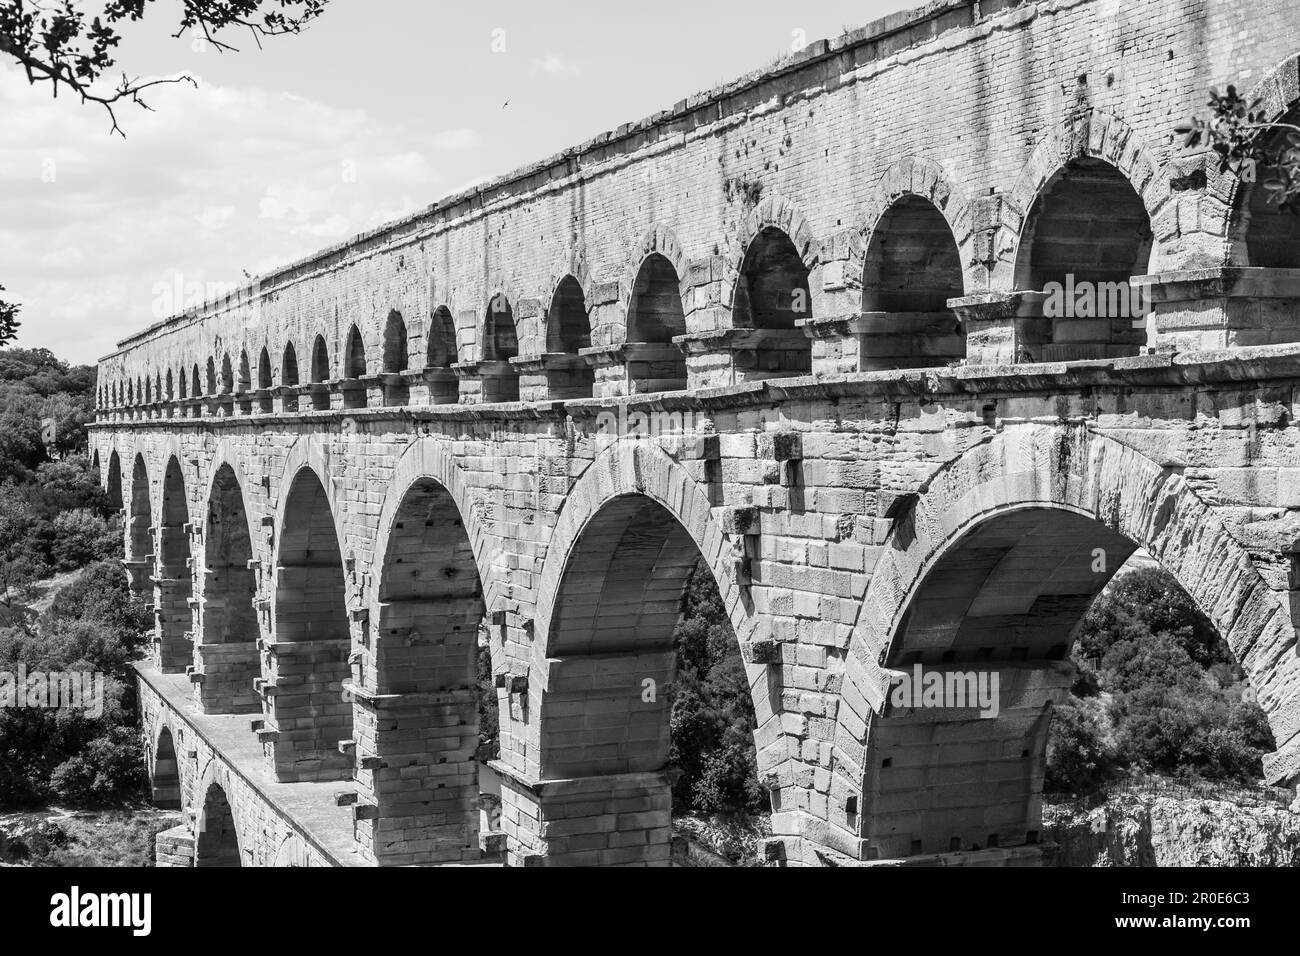 Les architectes romains et les ingénieurs hydrauliques qui ont conçu ce pont ont créé un chef-d'œuvre technique et artistique Banque D'Images